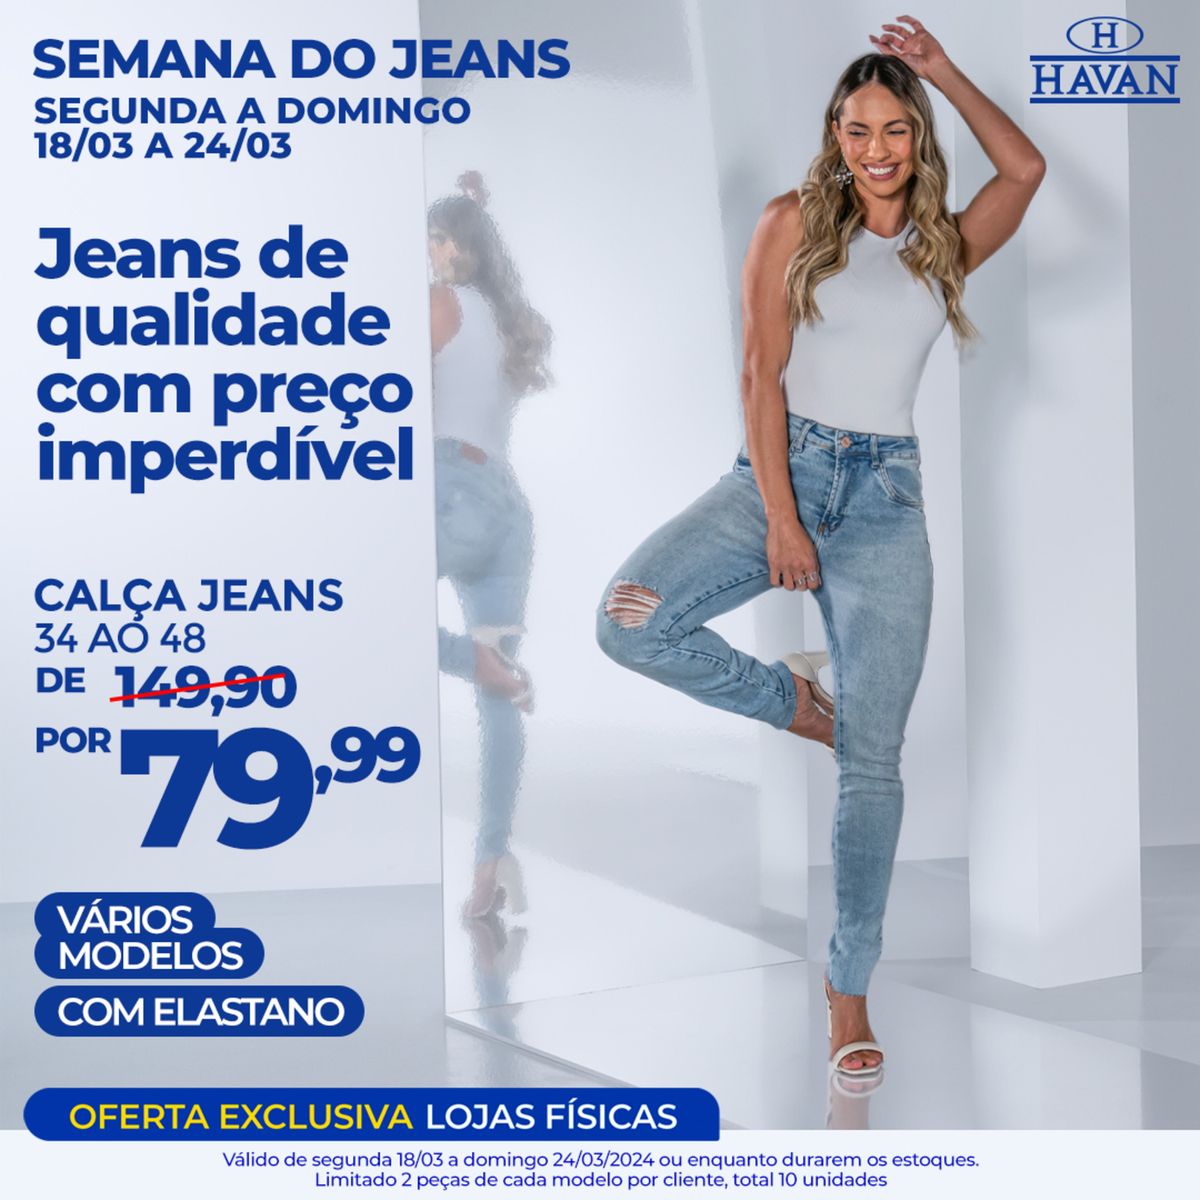 Semana do Jeans - Calça Jeans de Qualidade com preço imperdível